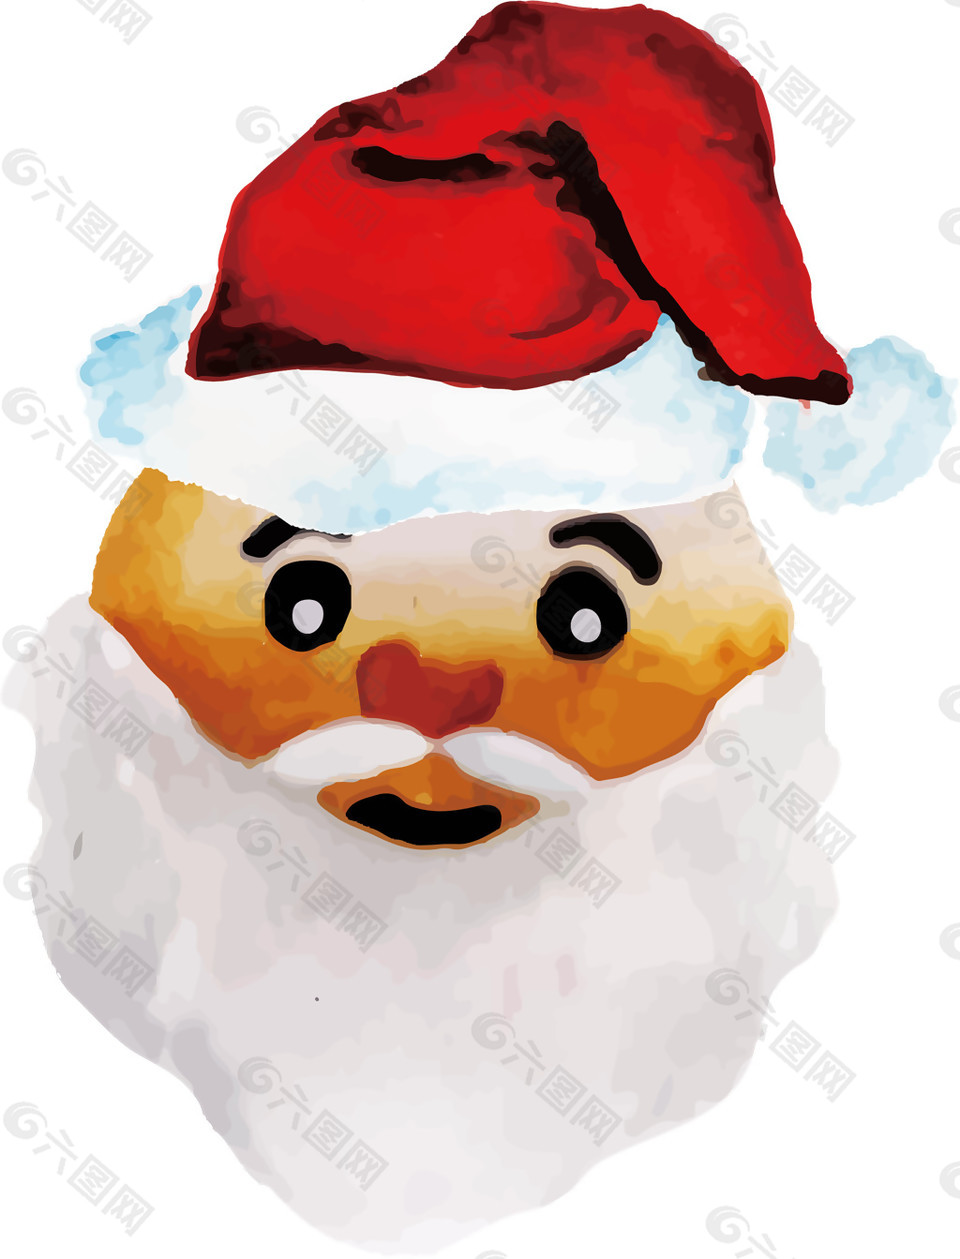 彩绘圣诞老人头像元素